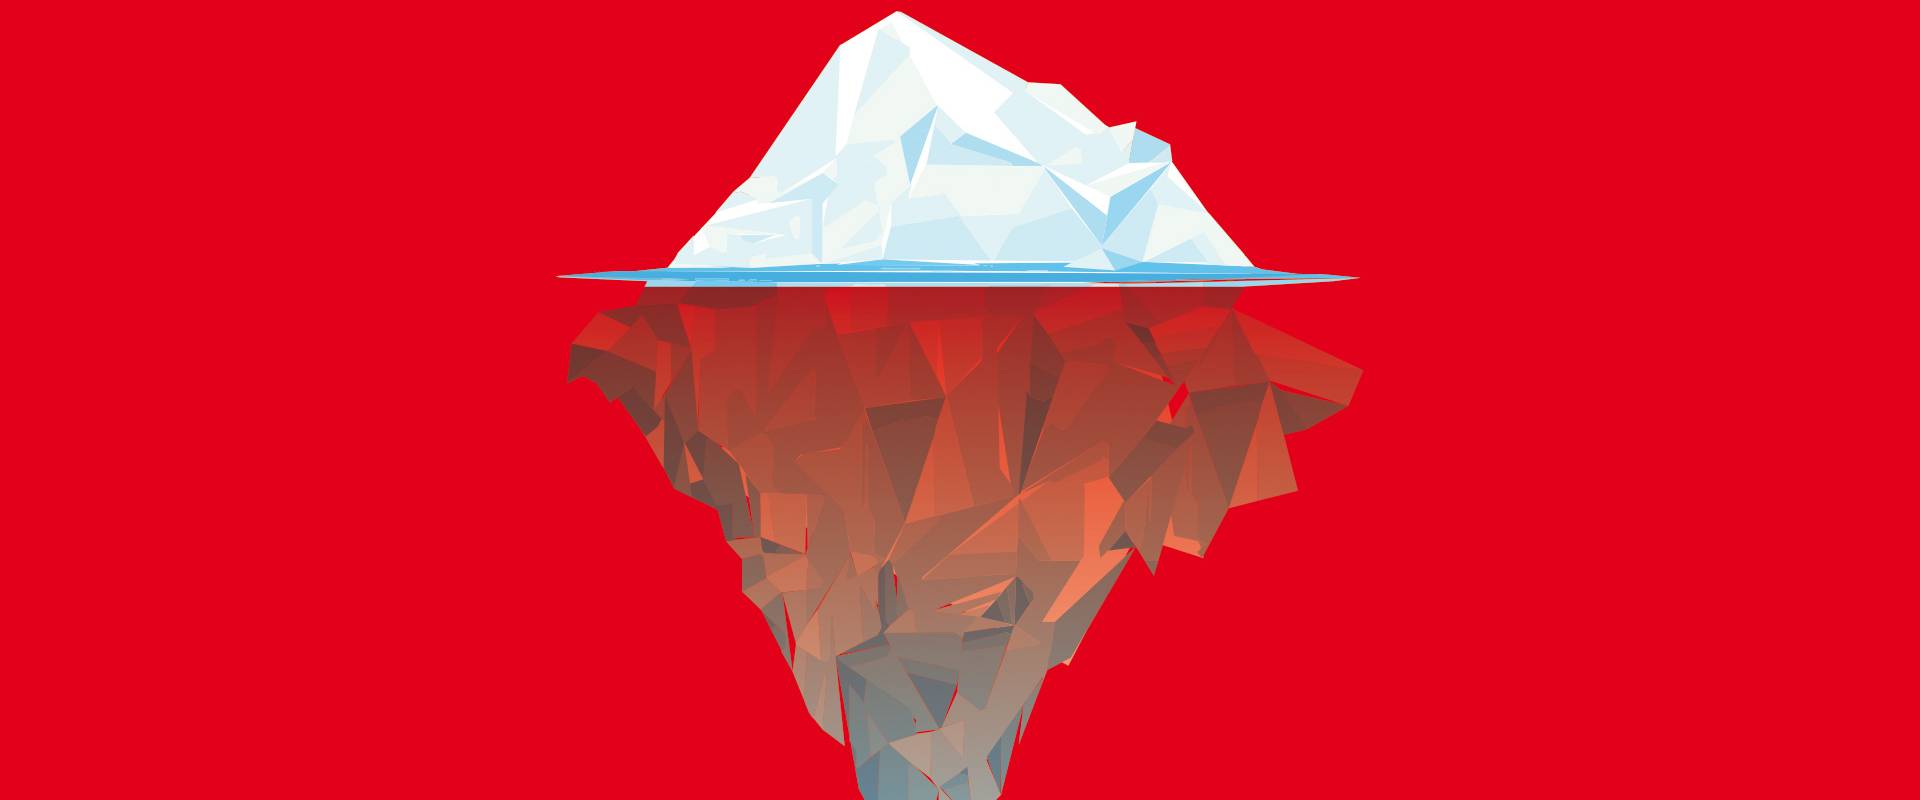 Eisberg, halb unter Wasser auf rotem Hintergrund